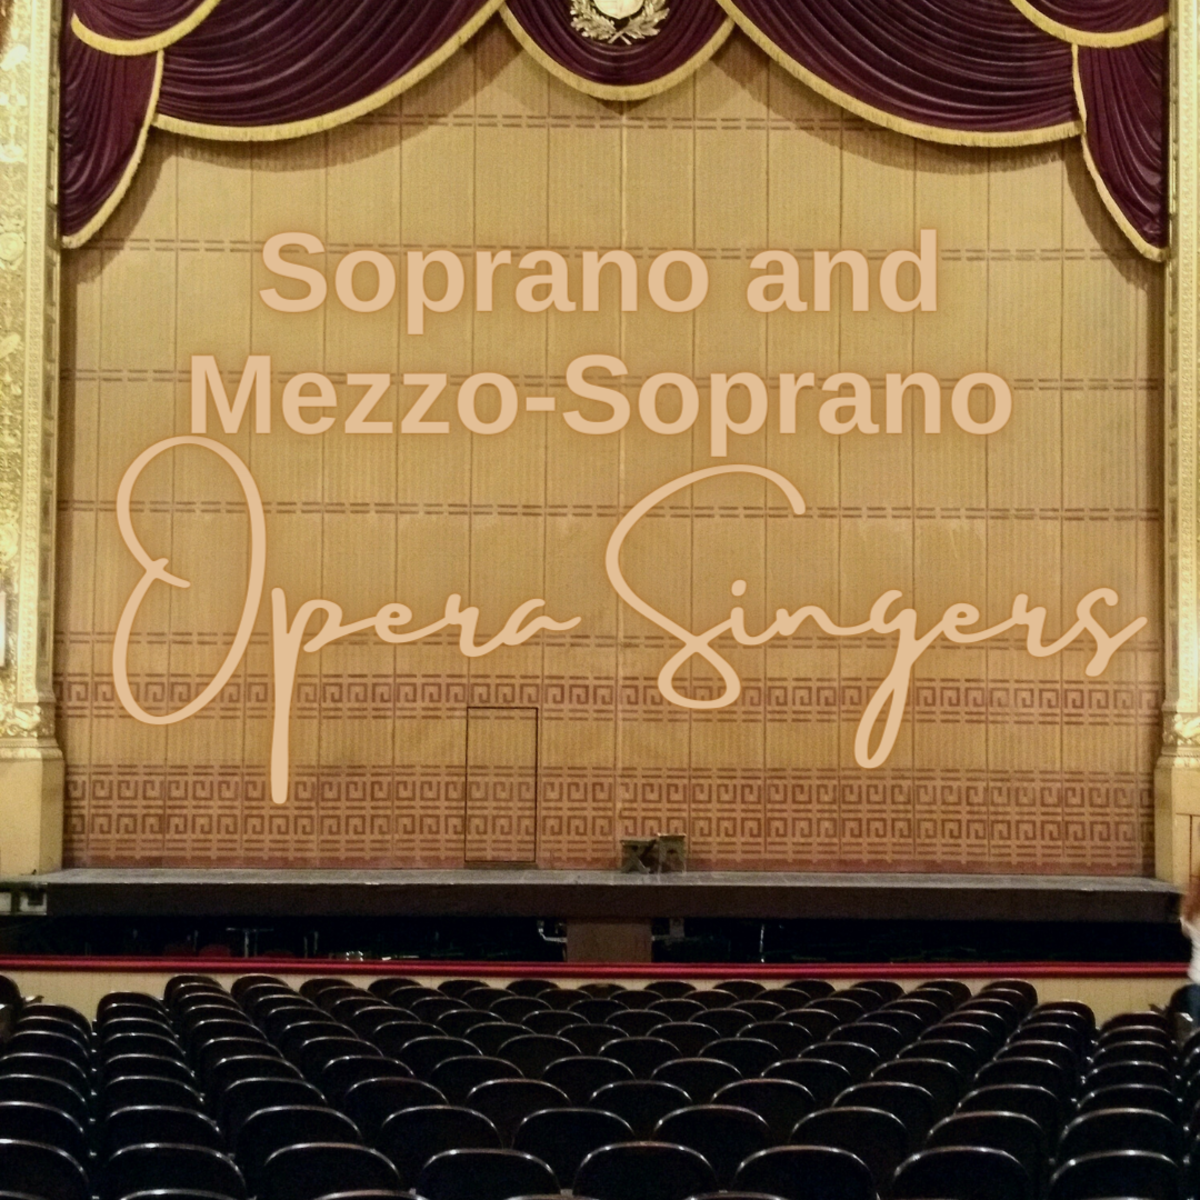 Today's Best Opera Singers: Sopranos and Mezzo-Sopranos